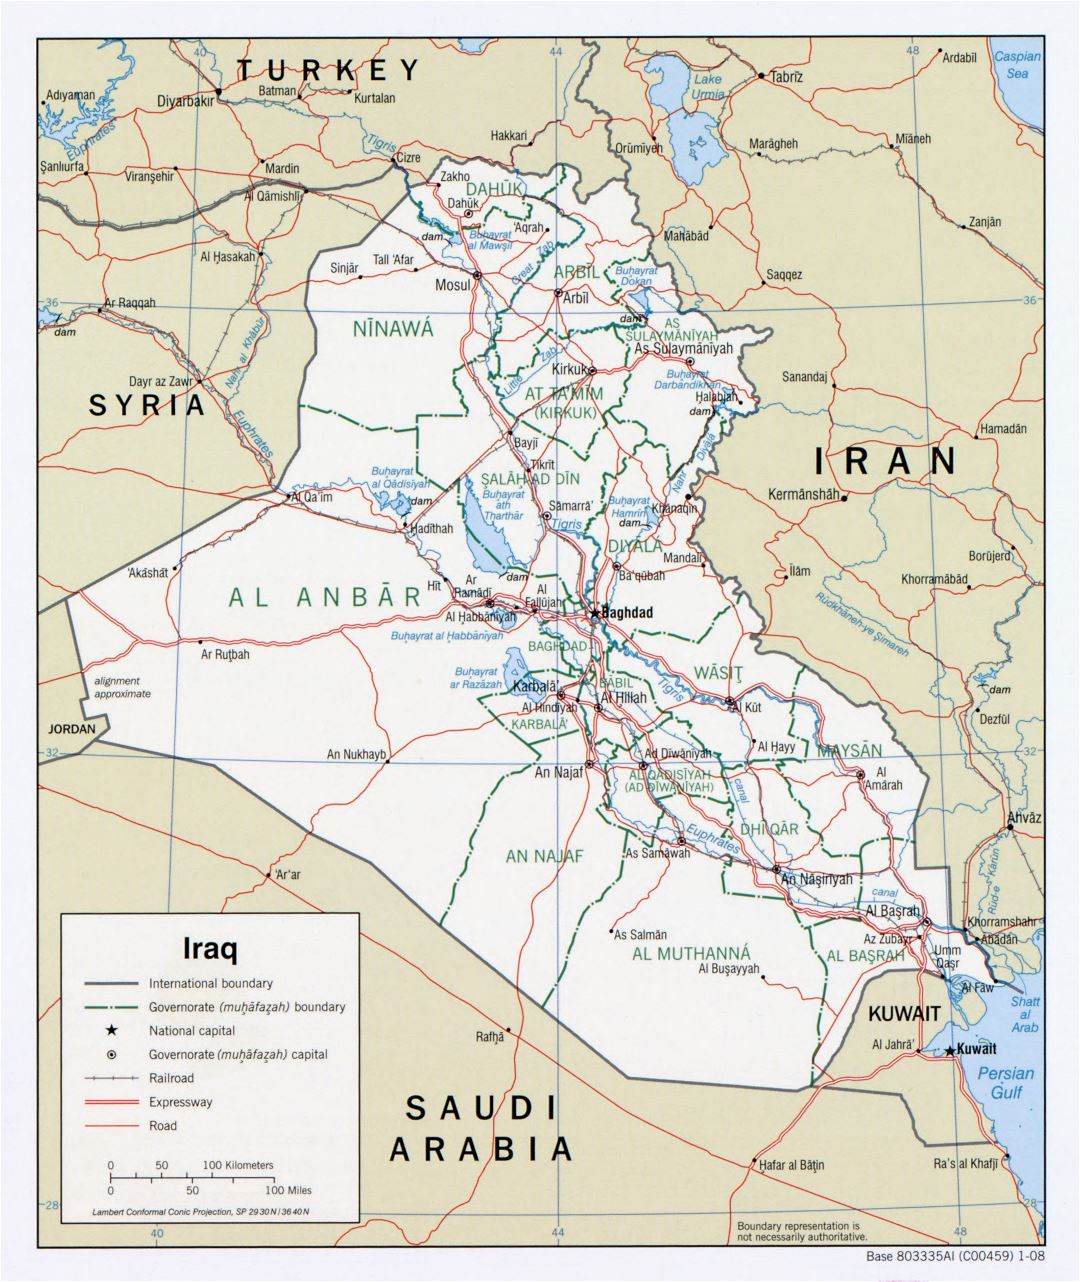 Grande detallado mapa político y administrativo de Irak con carreteras, autopistas, ferrocarriles y principales ciudades - 2008